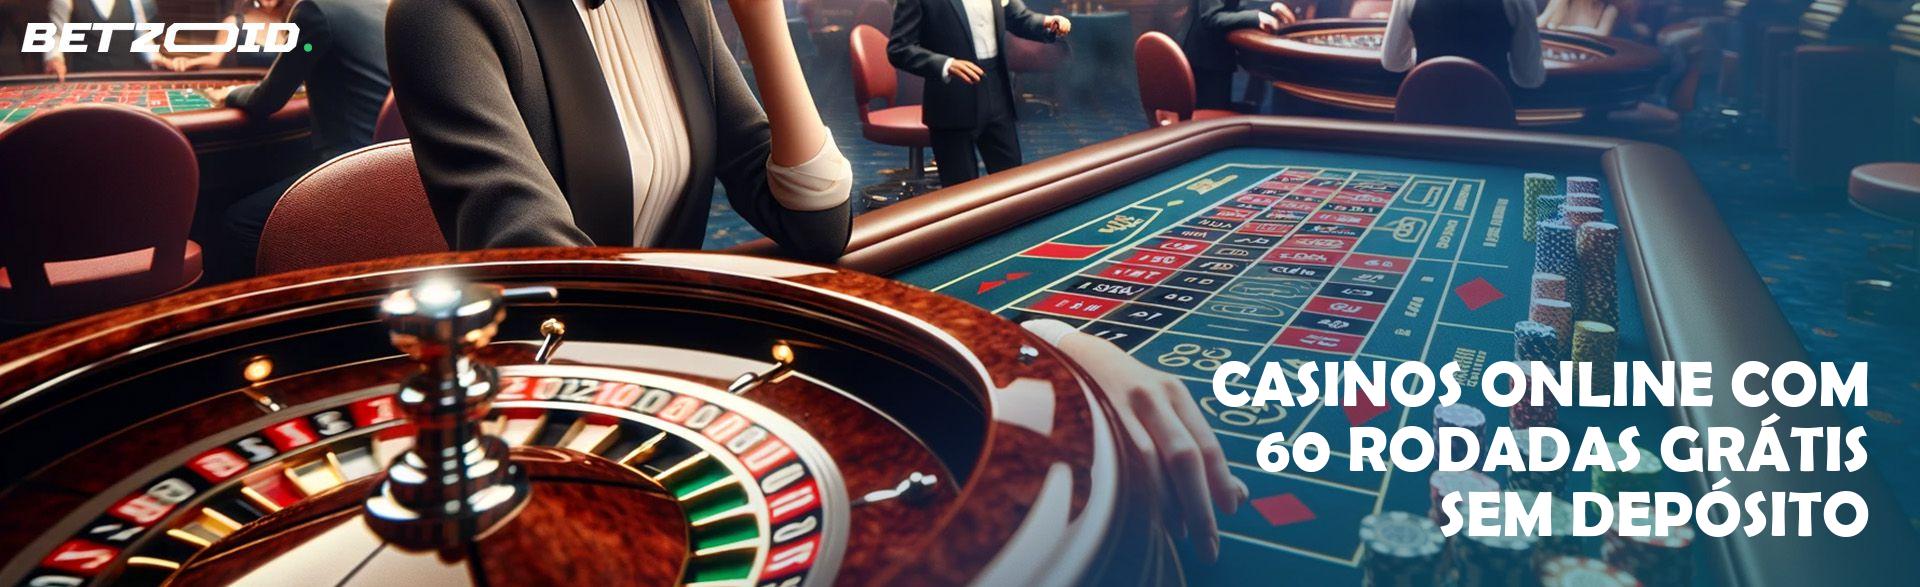 Casinos Online com 60 Rodadas Grátis sem Depósito.